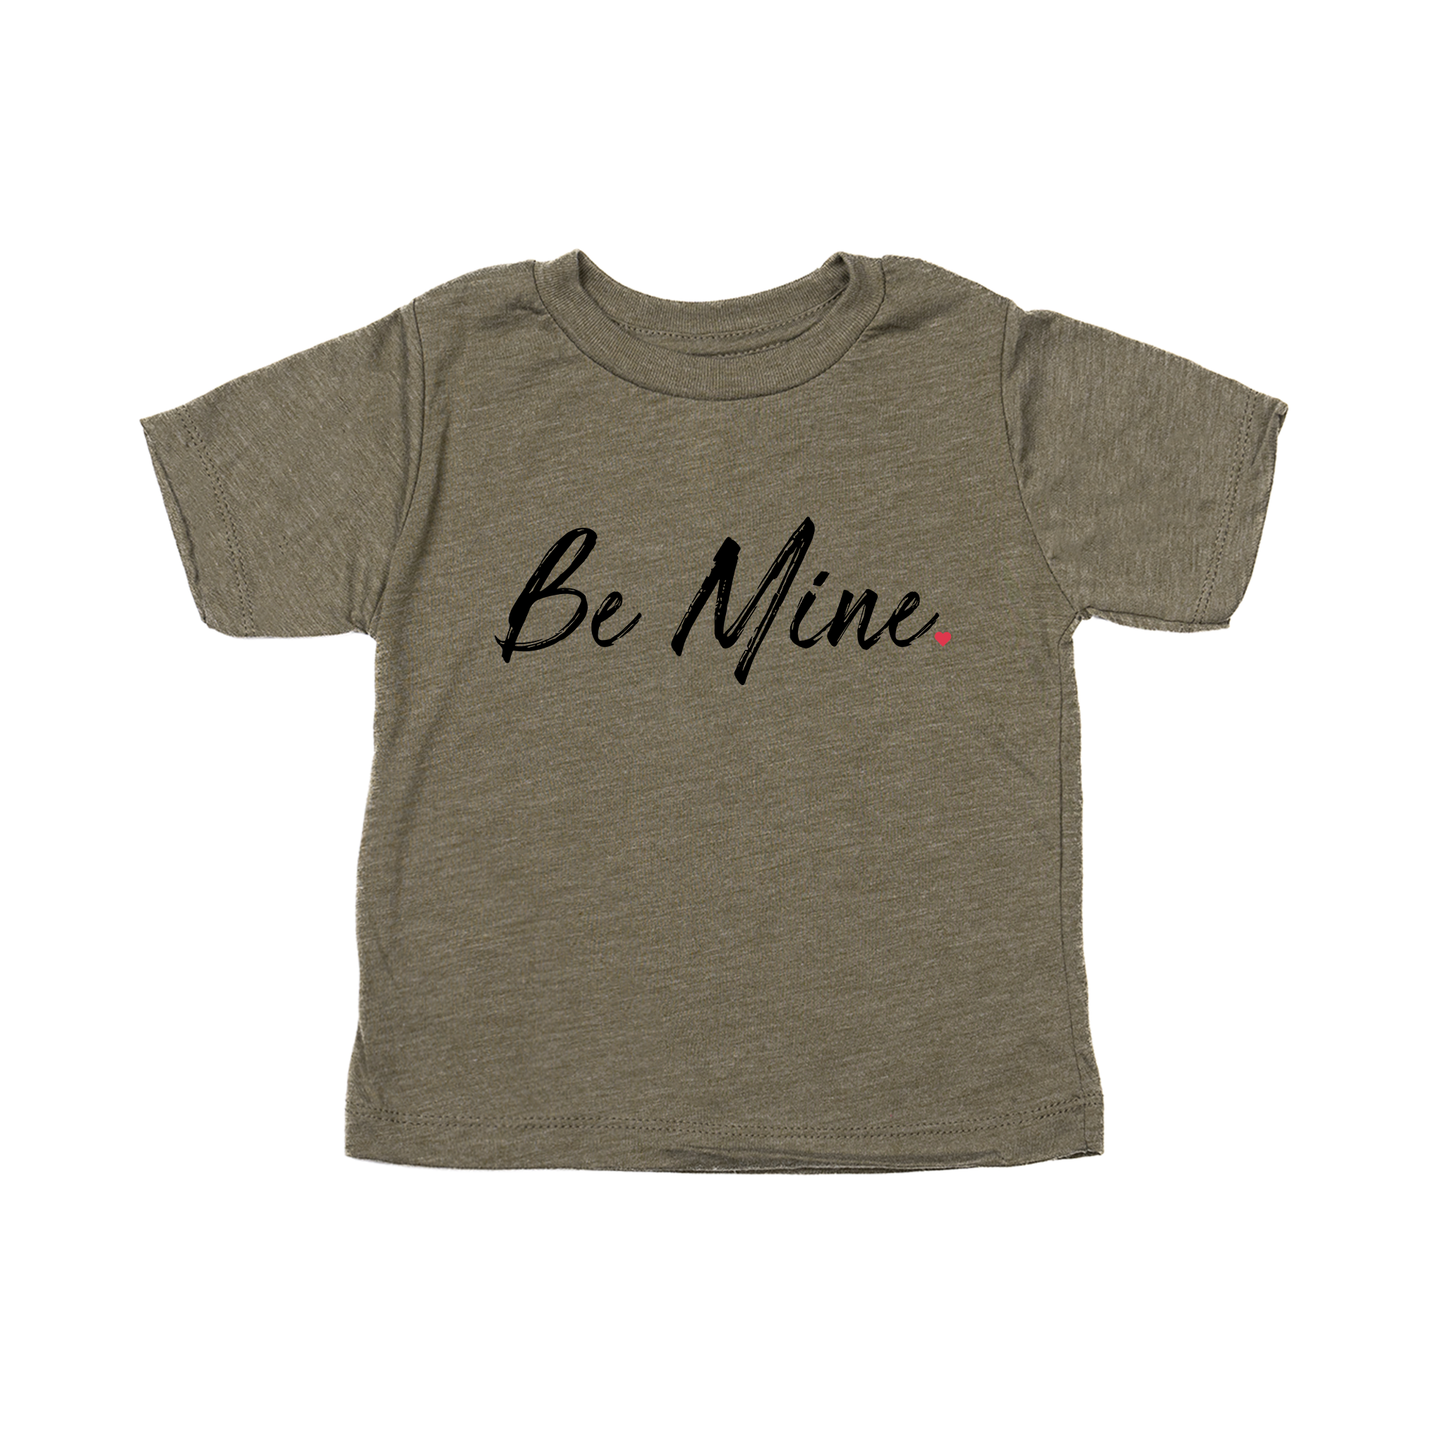 Be Mine <3 - Kids Tee (Olive)